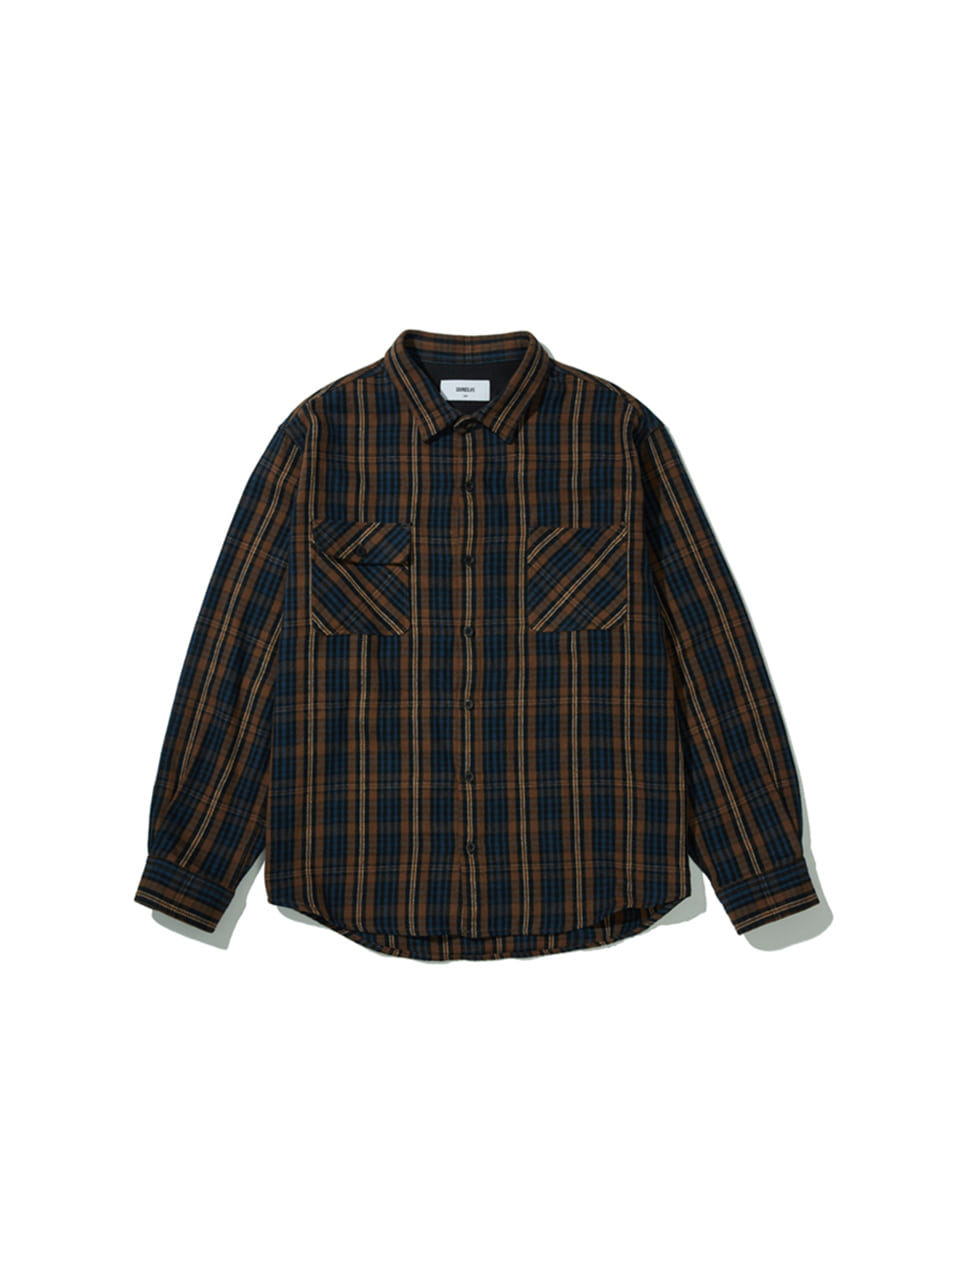 SOUNDSLIFE - Flannel Shirt Standard Fit Brown